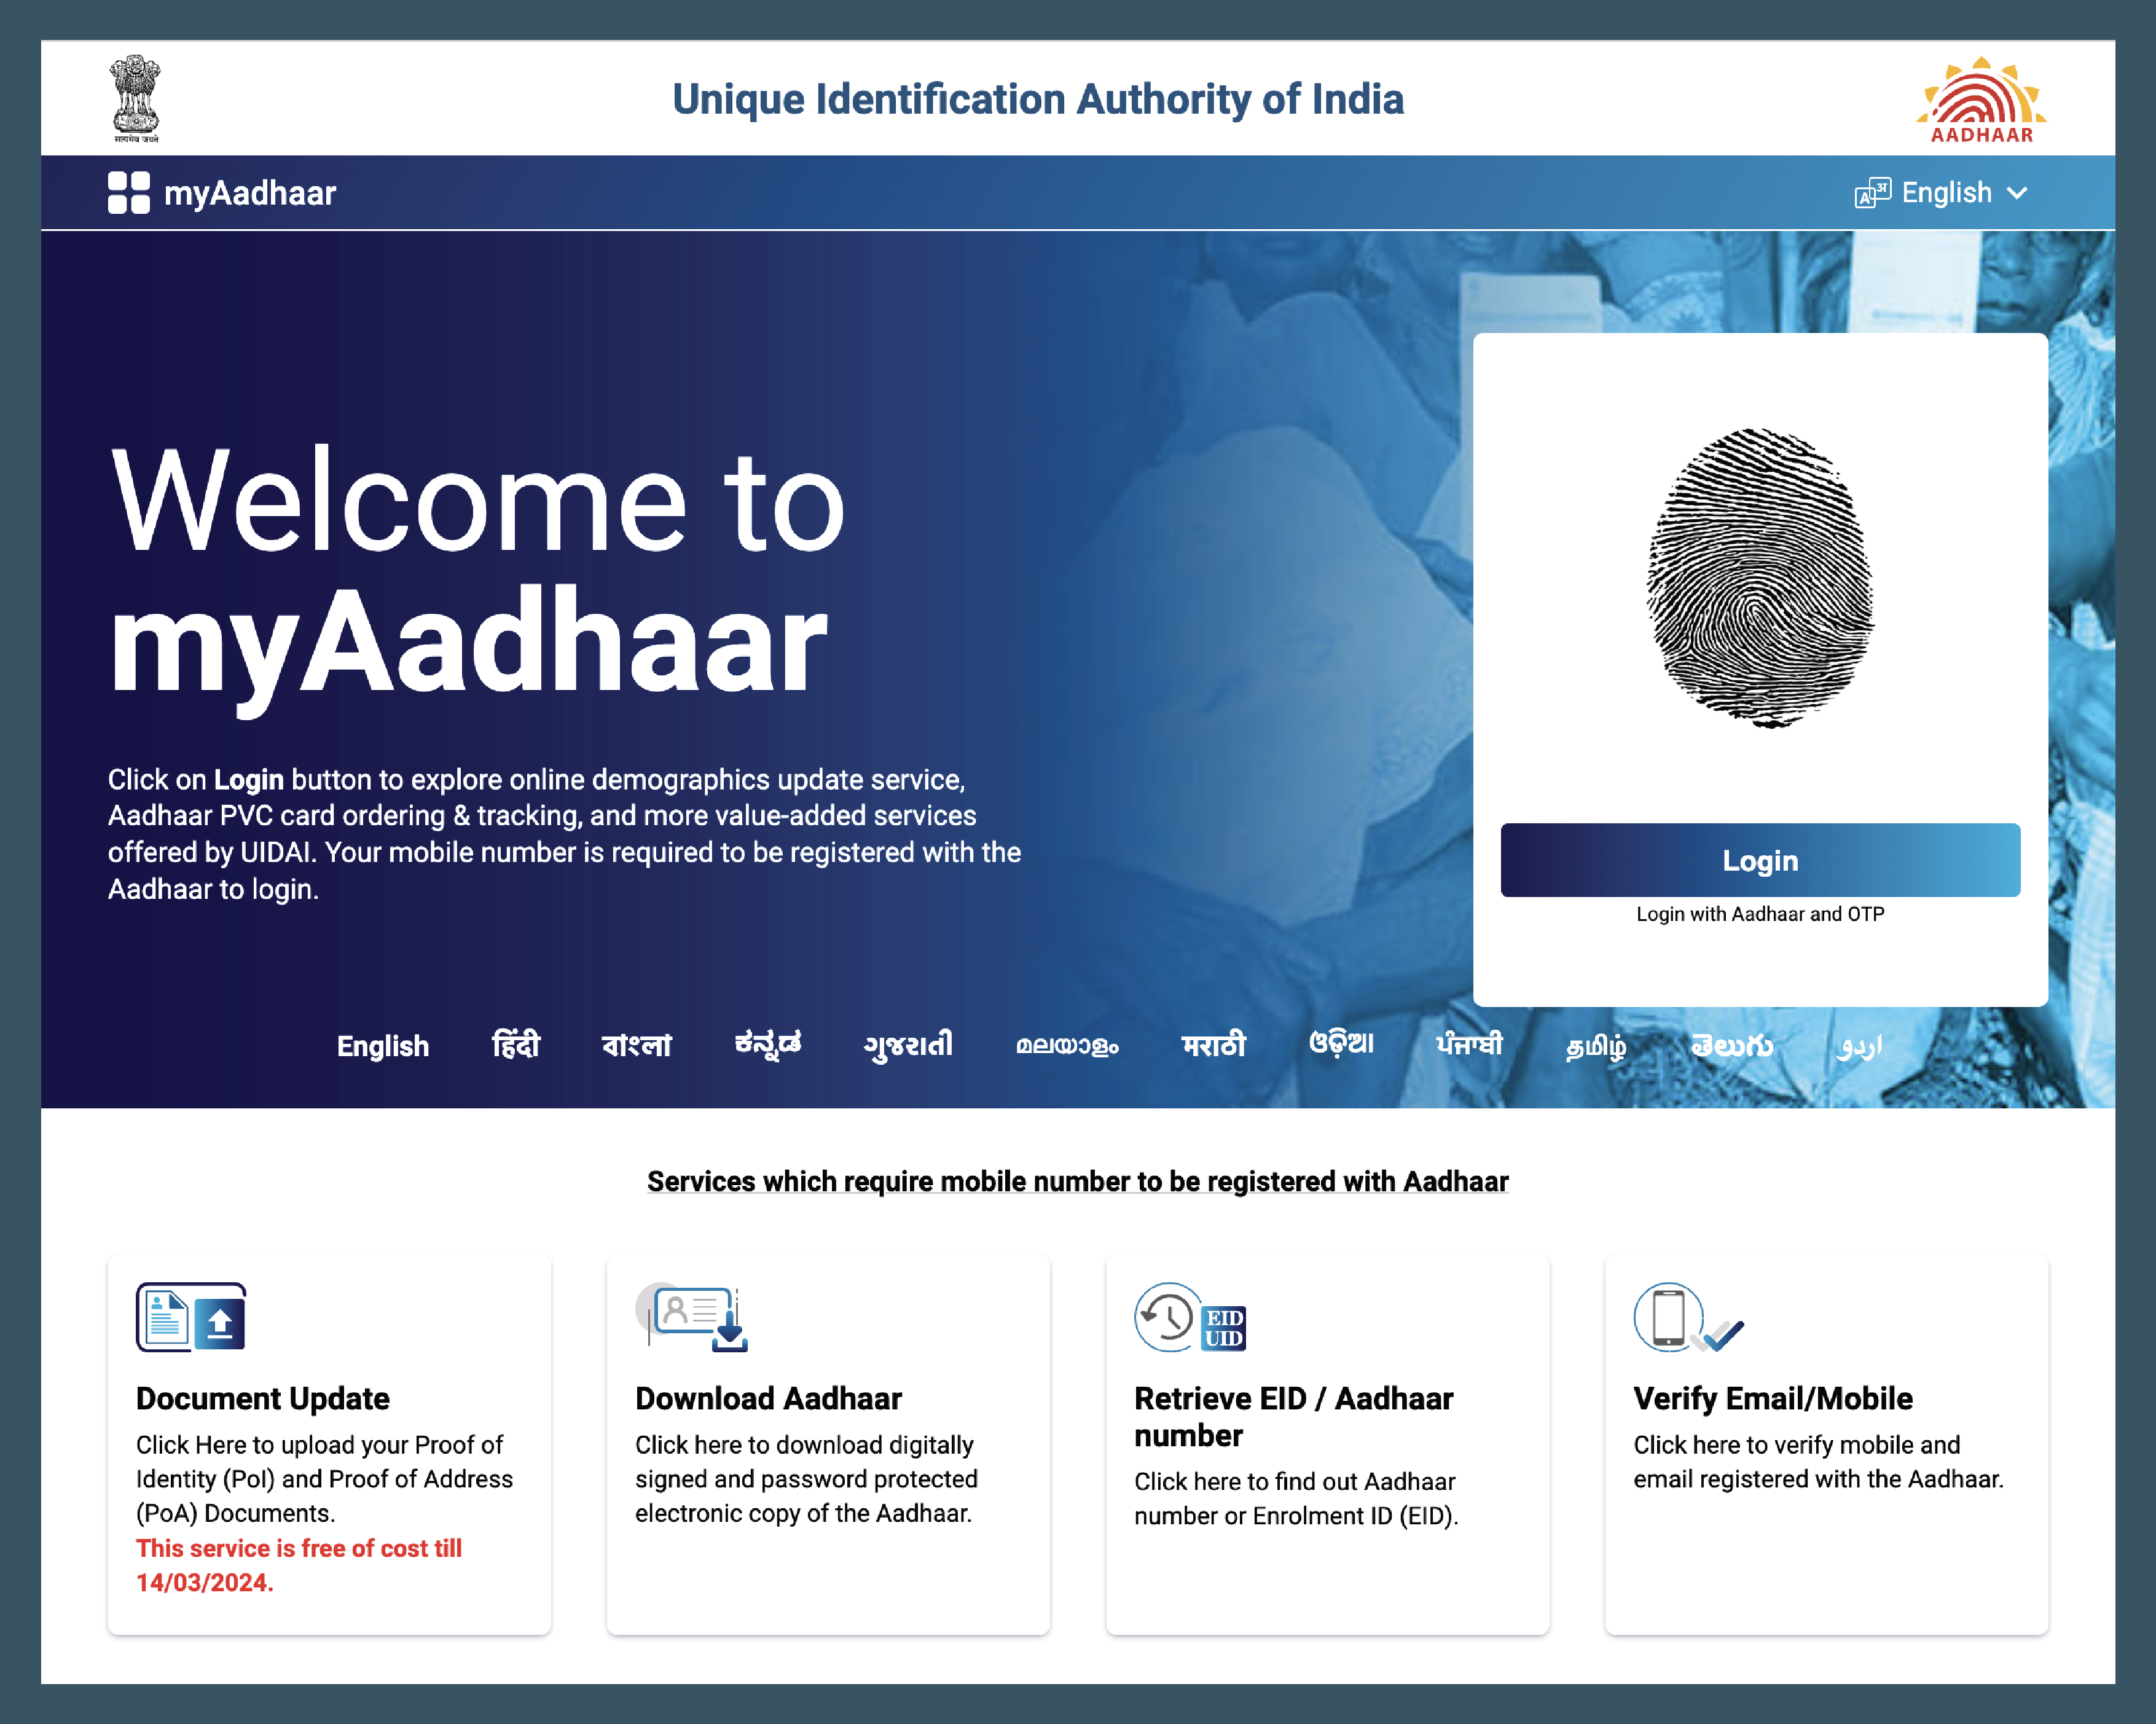 how-to-download-aadhaar-xml